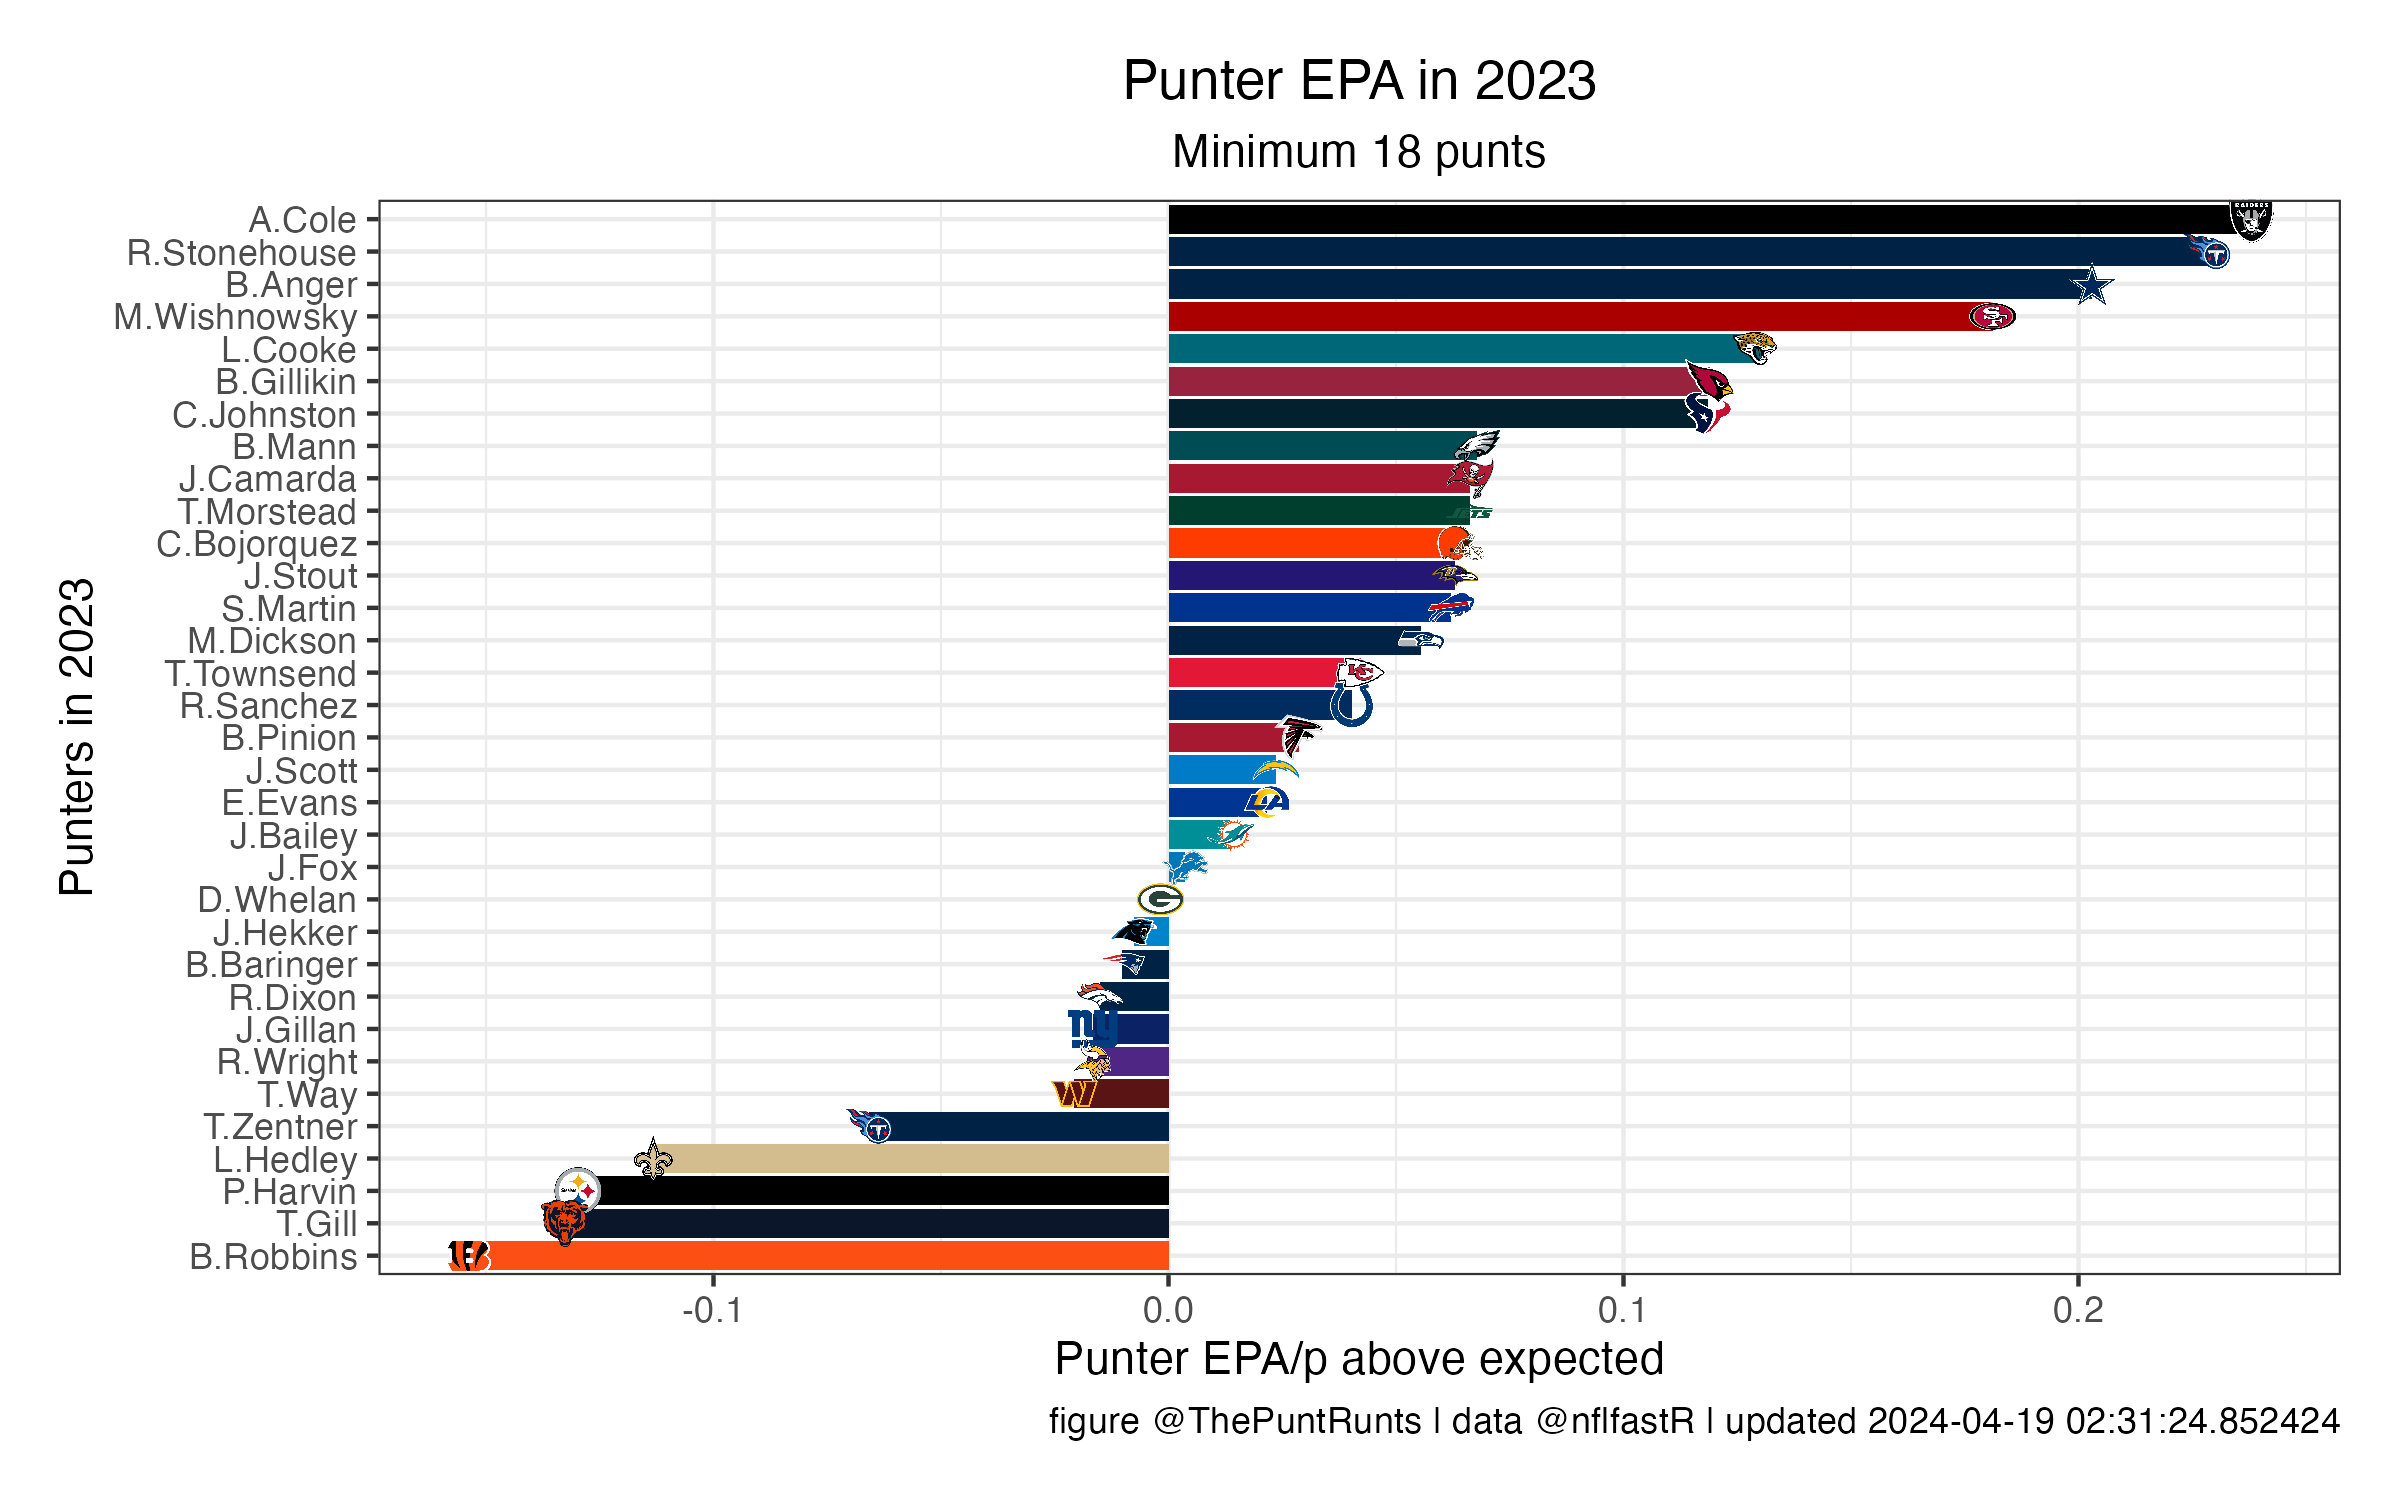 EPA so far in 2021